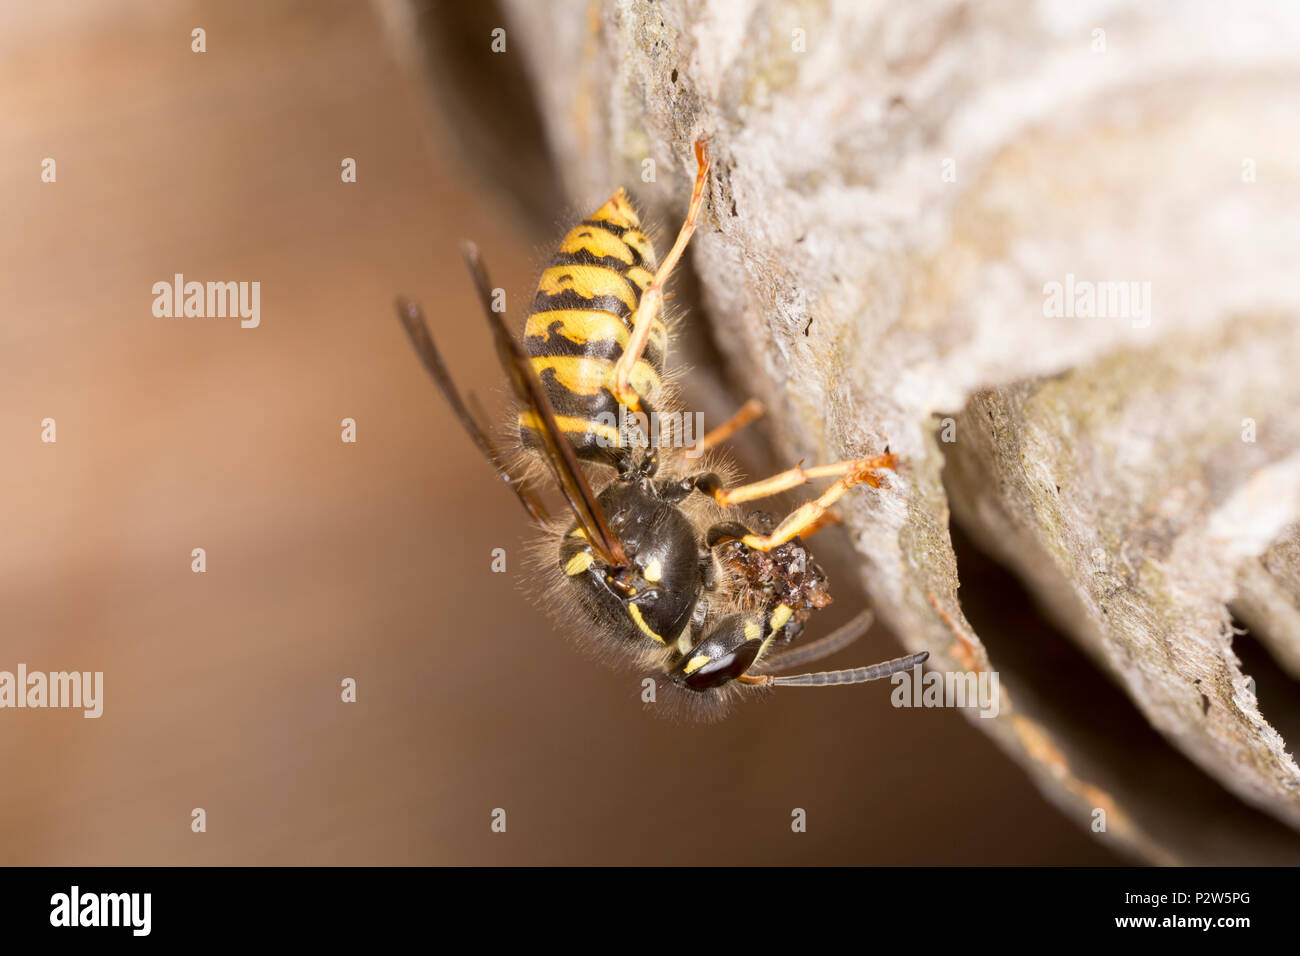 Eine Wespe zurück in sein Nest in das Dach einer alten hölzernen Gartenhäuschen mit Nahrung für die Larven. Die Wespe erscheint die Beschreibung für Dolicho übereinstimmen Stockfoto